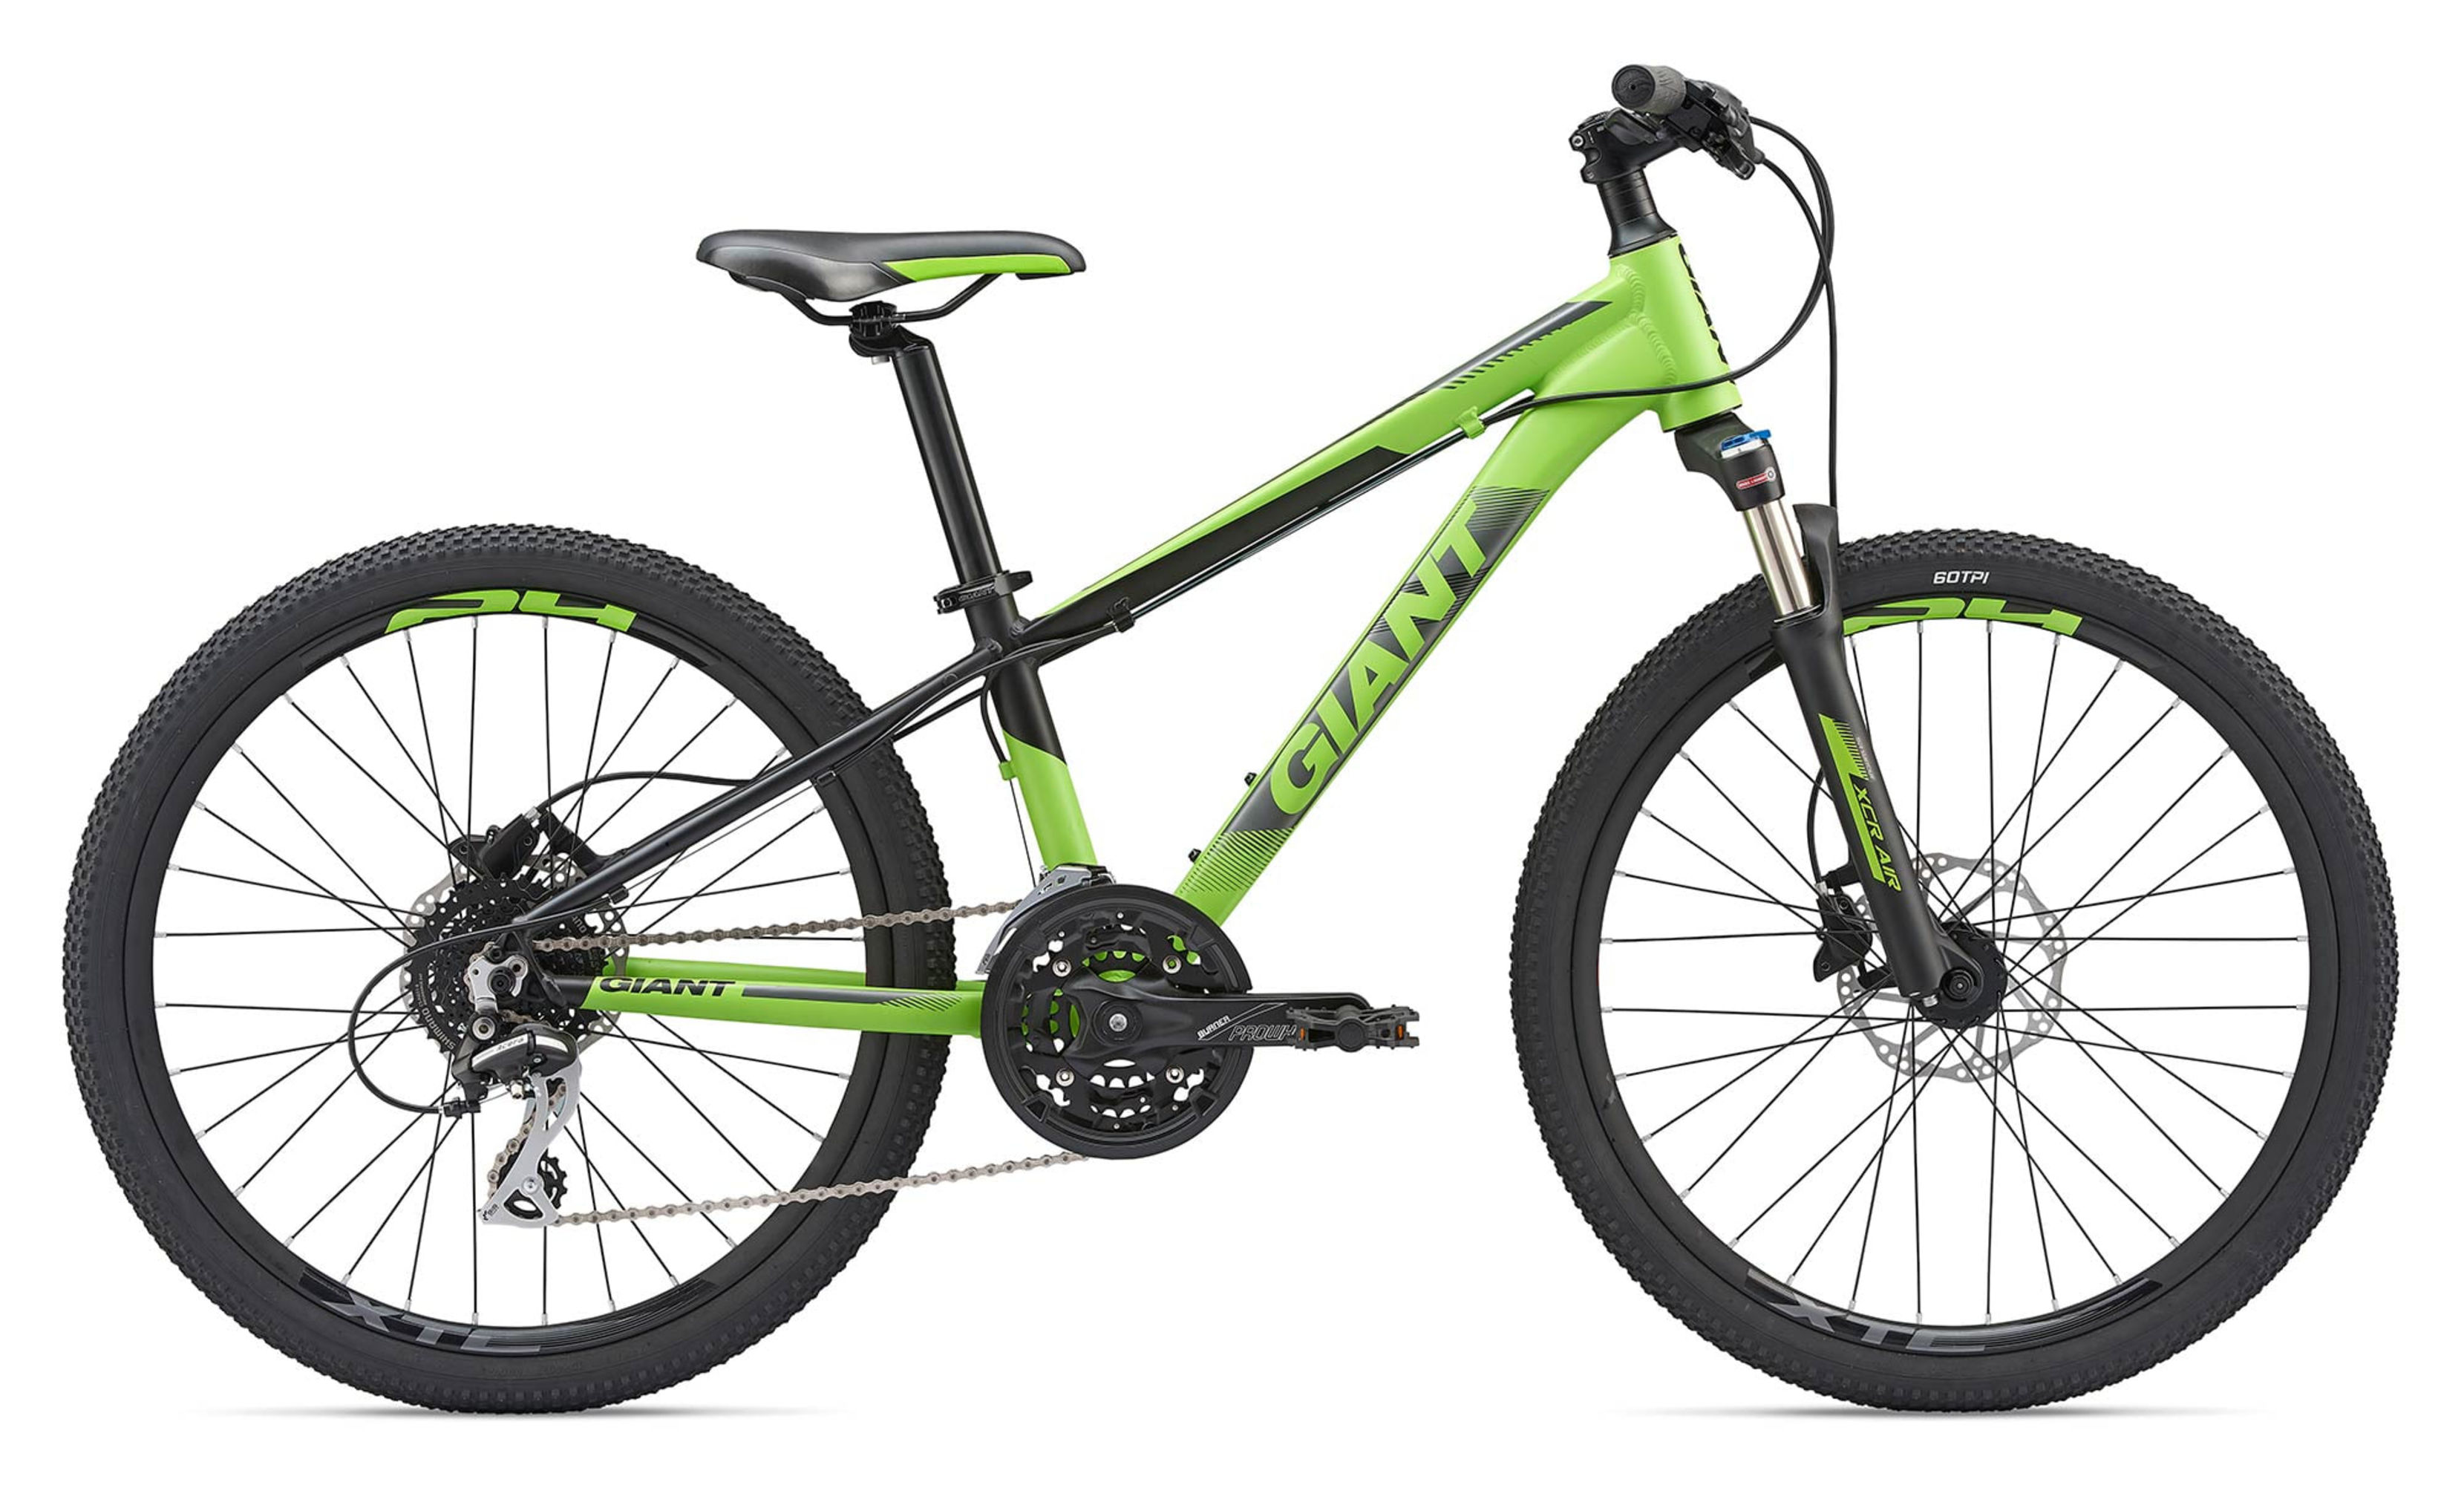  Отзывы о Подростковом велосипеде Giant XTC SL Jr 24 2020